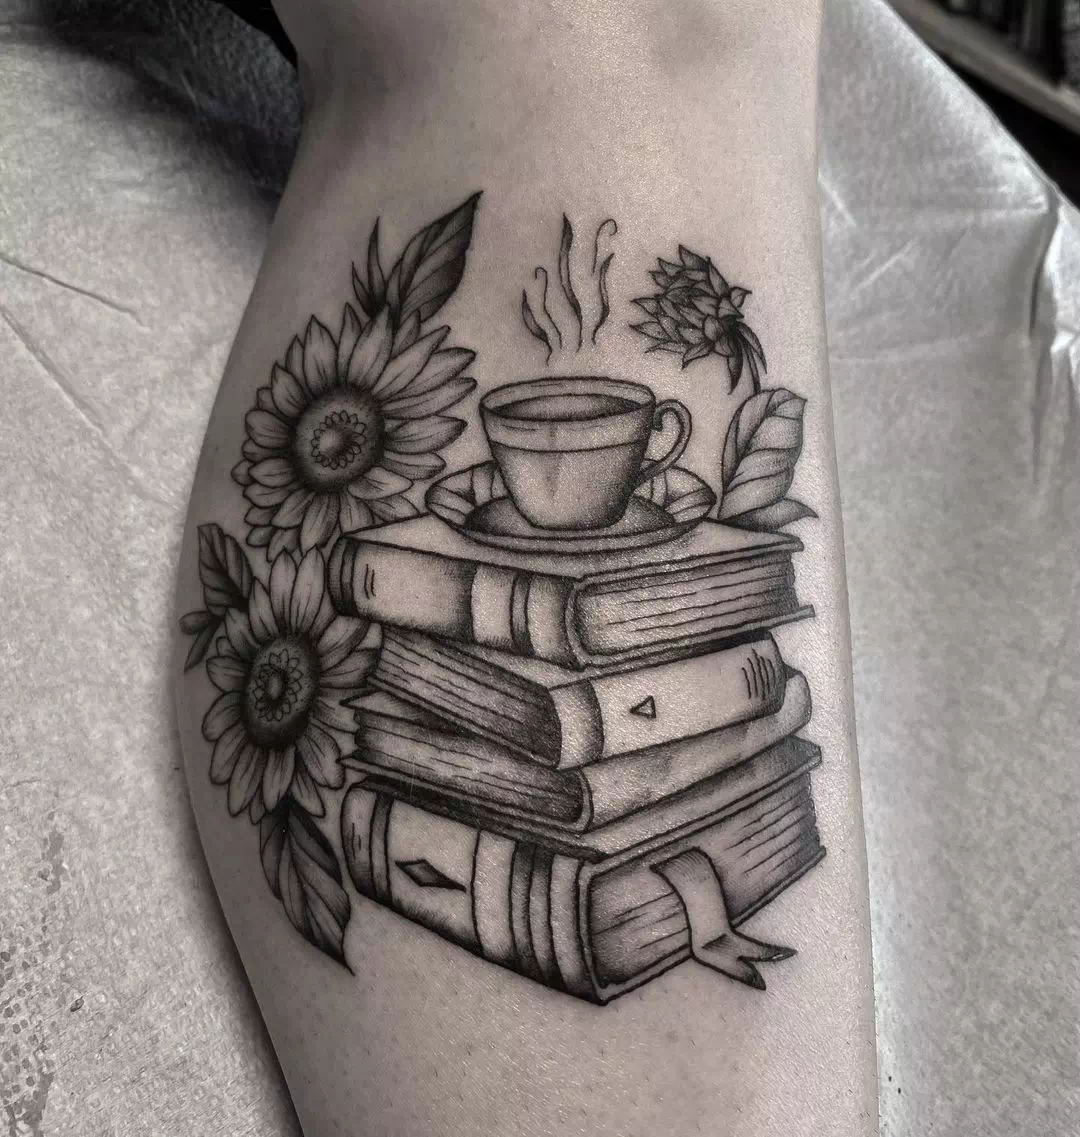 Buch- und Kaffee-Sonnenblumen